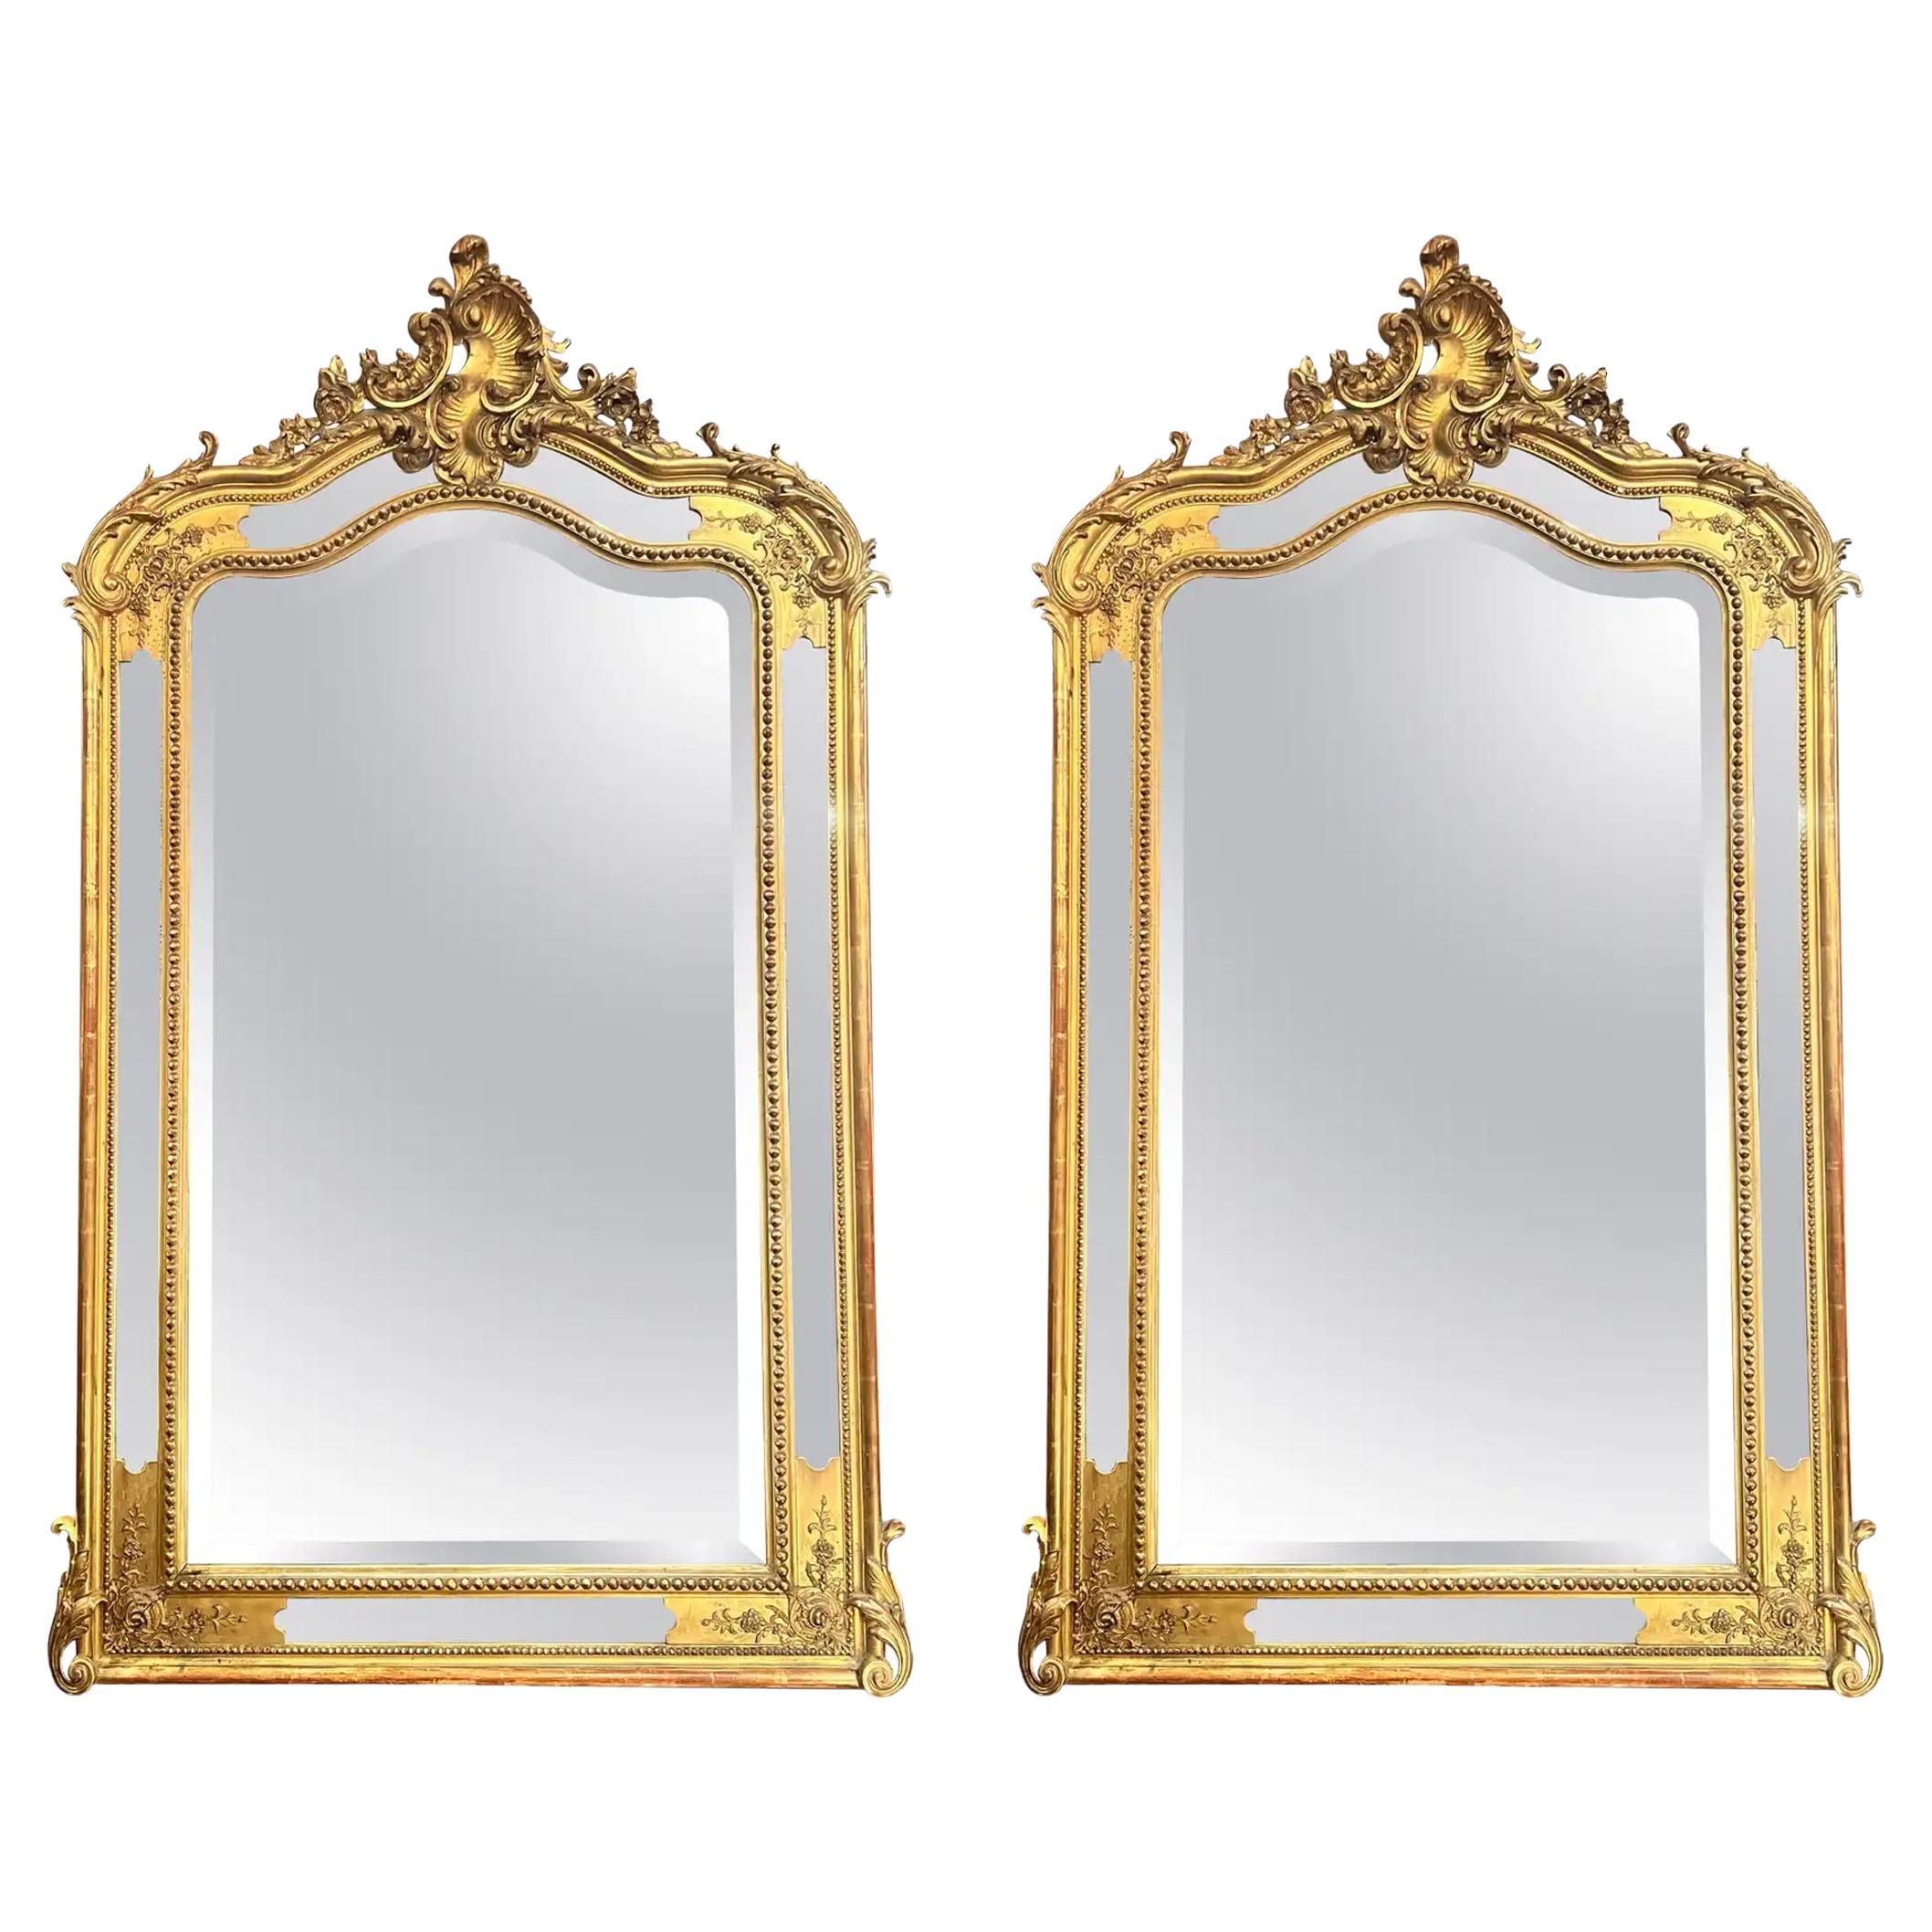 Zwei antike französische Louis XV-Spiegel aus geschnitztem Holz und Blattgold, um 1890.